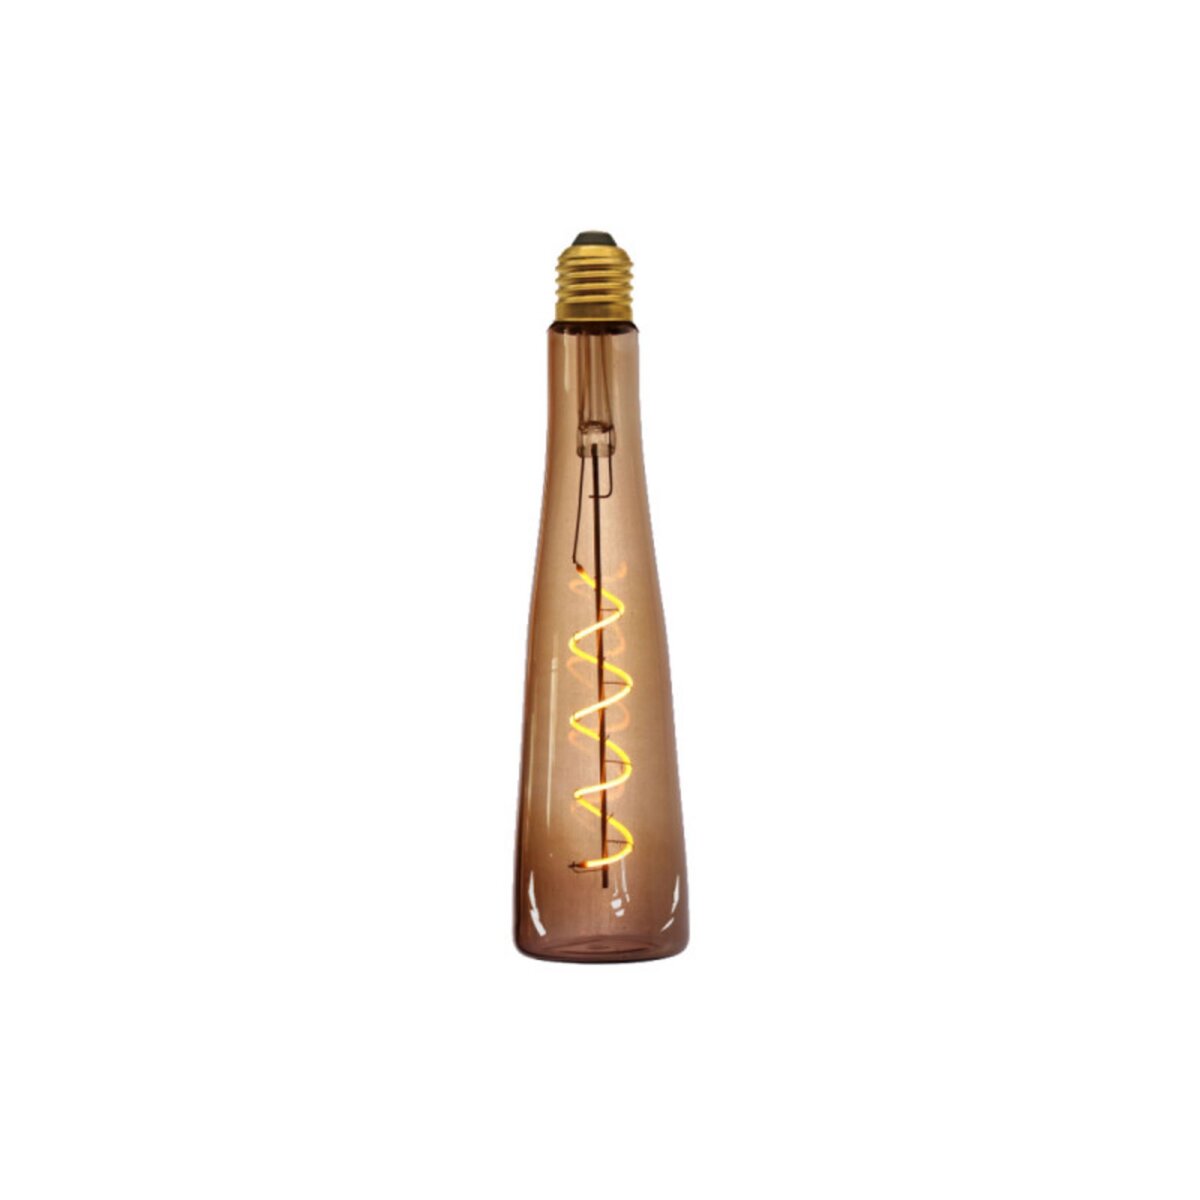  Ampoule LED bouteille marron XXCELL - 4 W - 200 lumens - 3000 K - E27